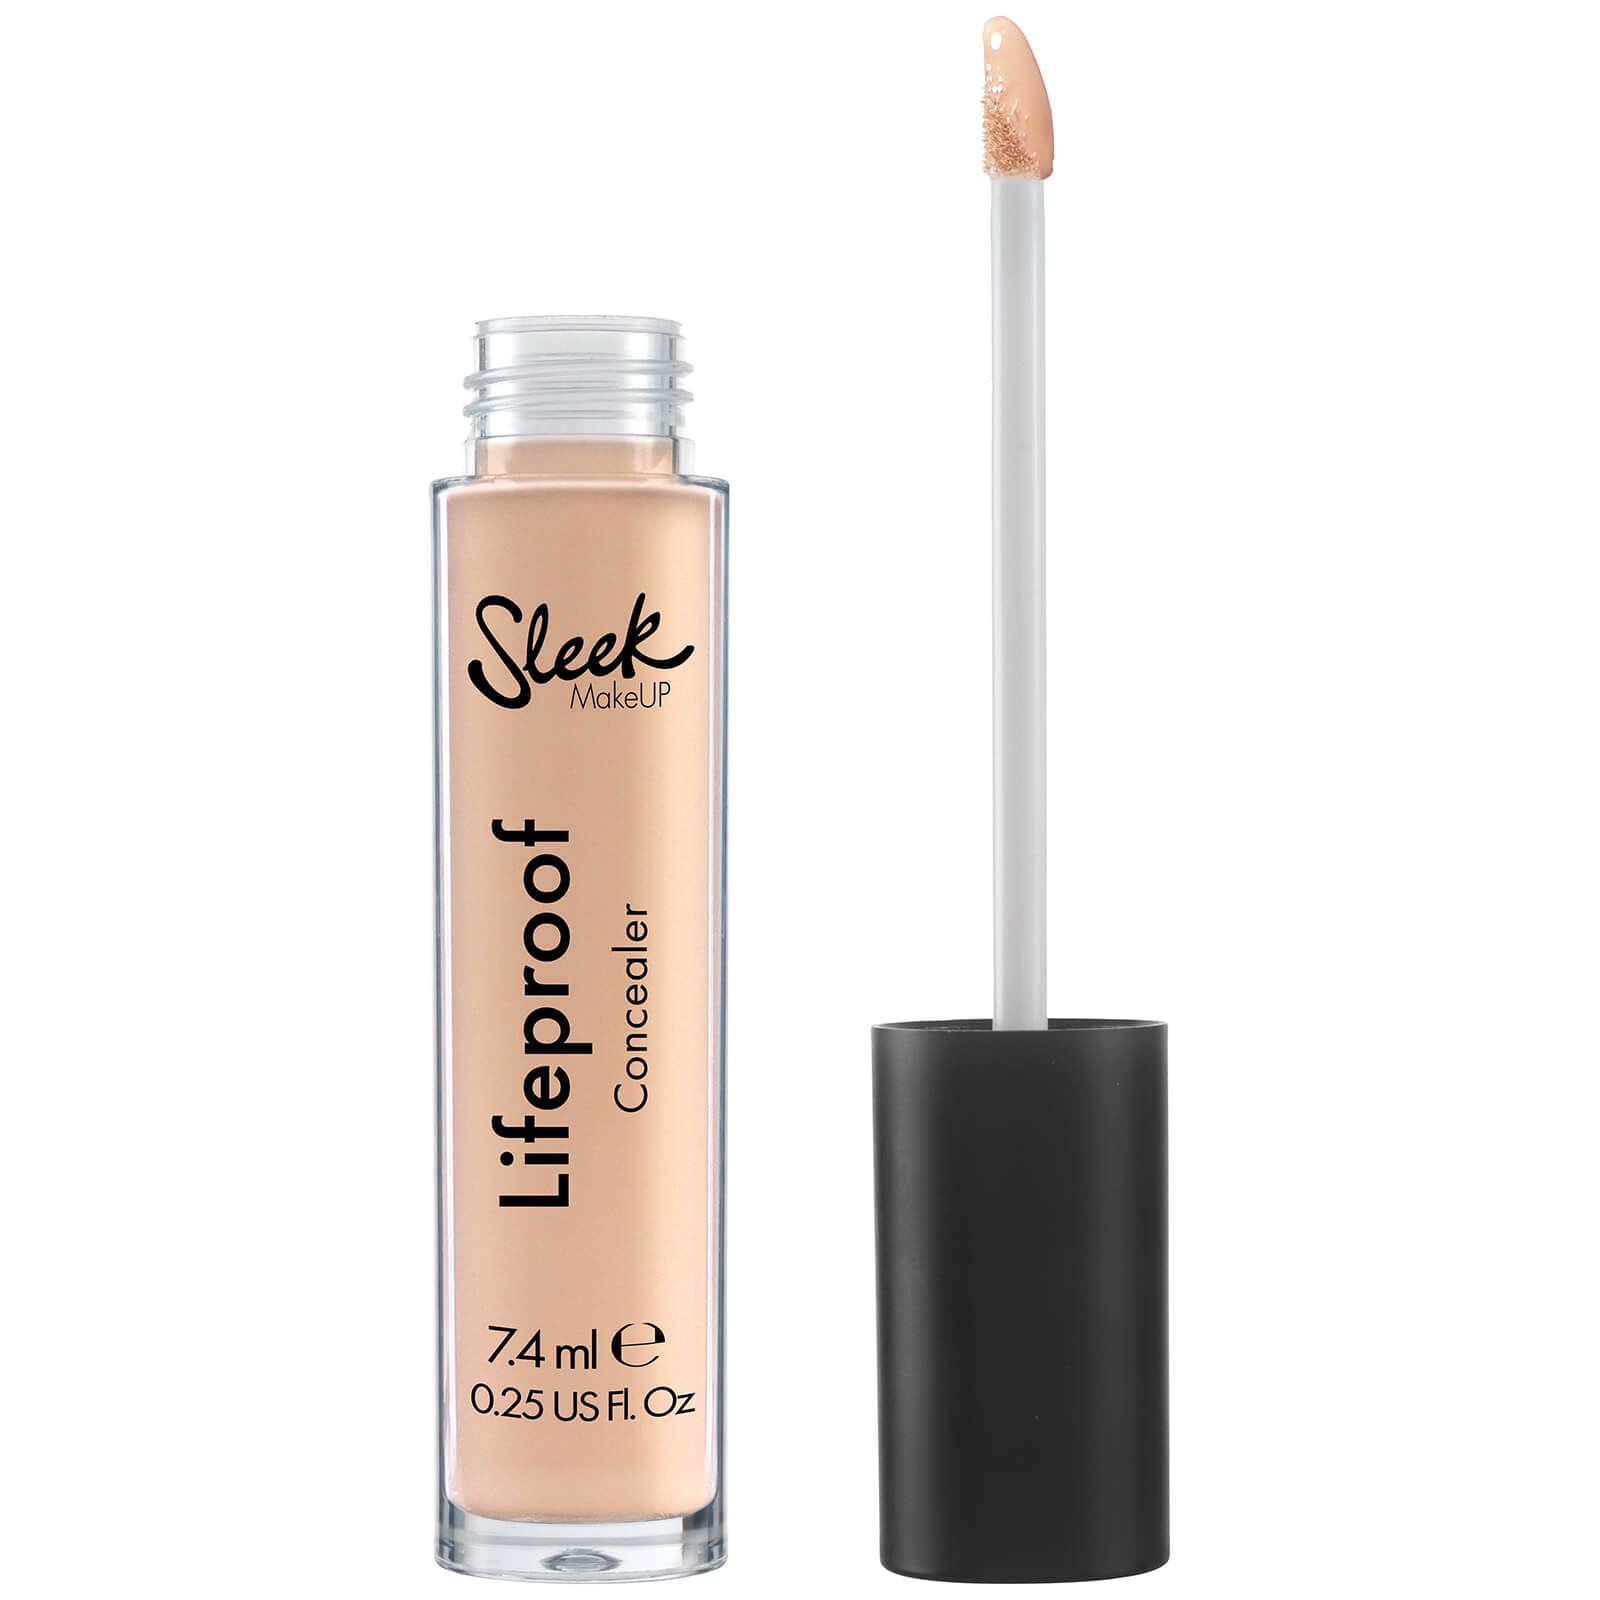 Sleek MakeUP Lifeproof Concealer 7.4ml (Various Shades) - Flat White (01)